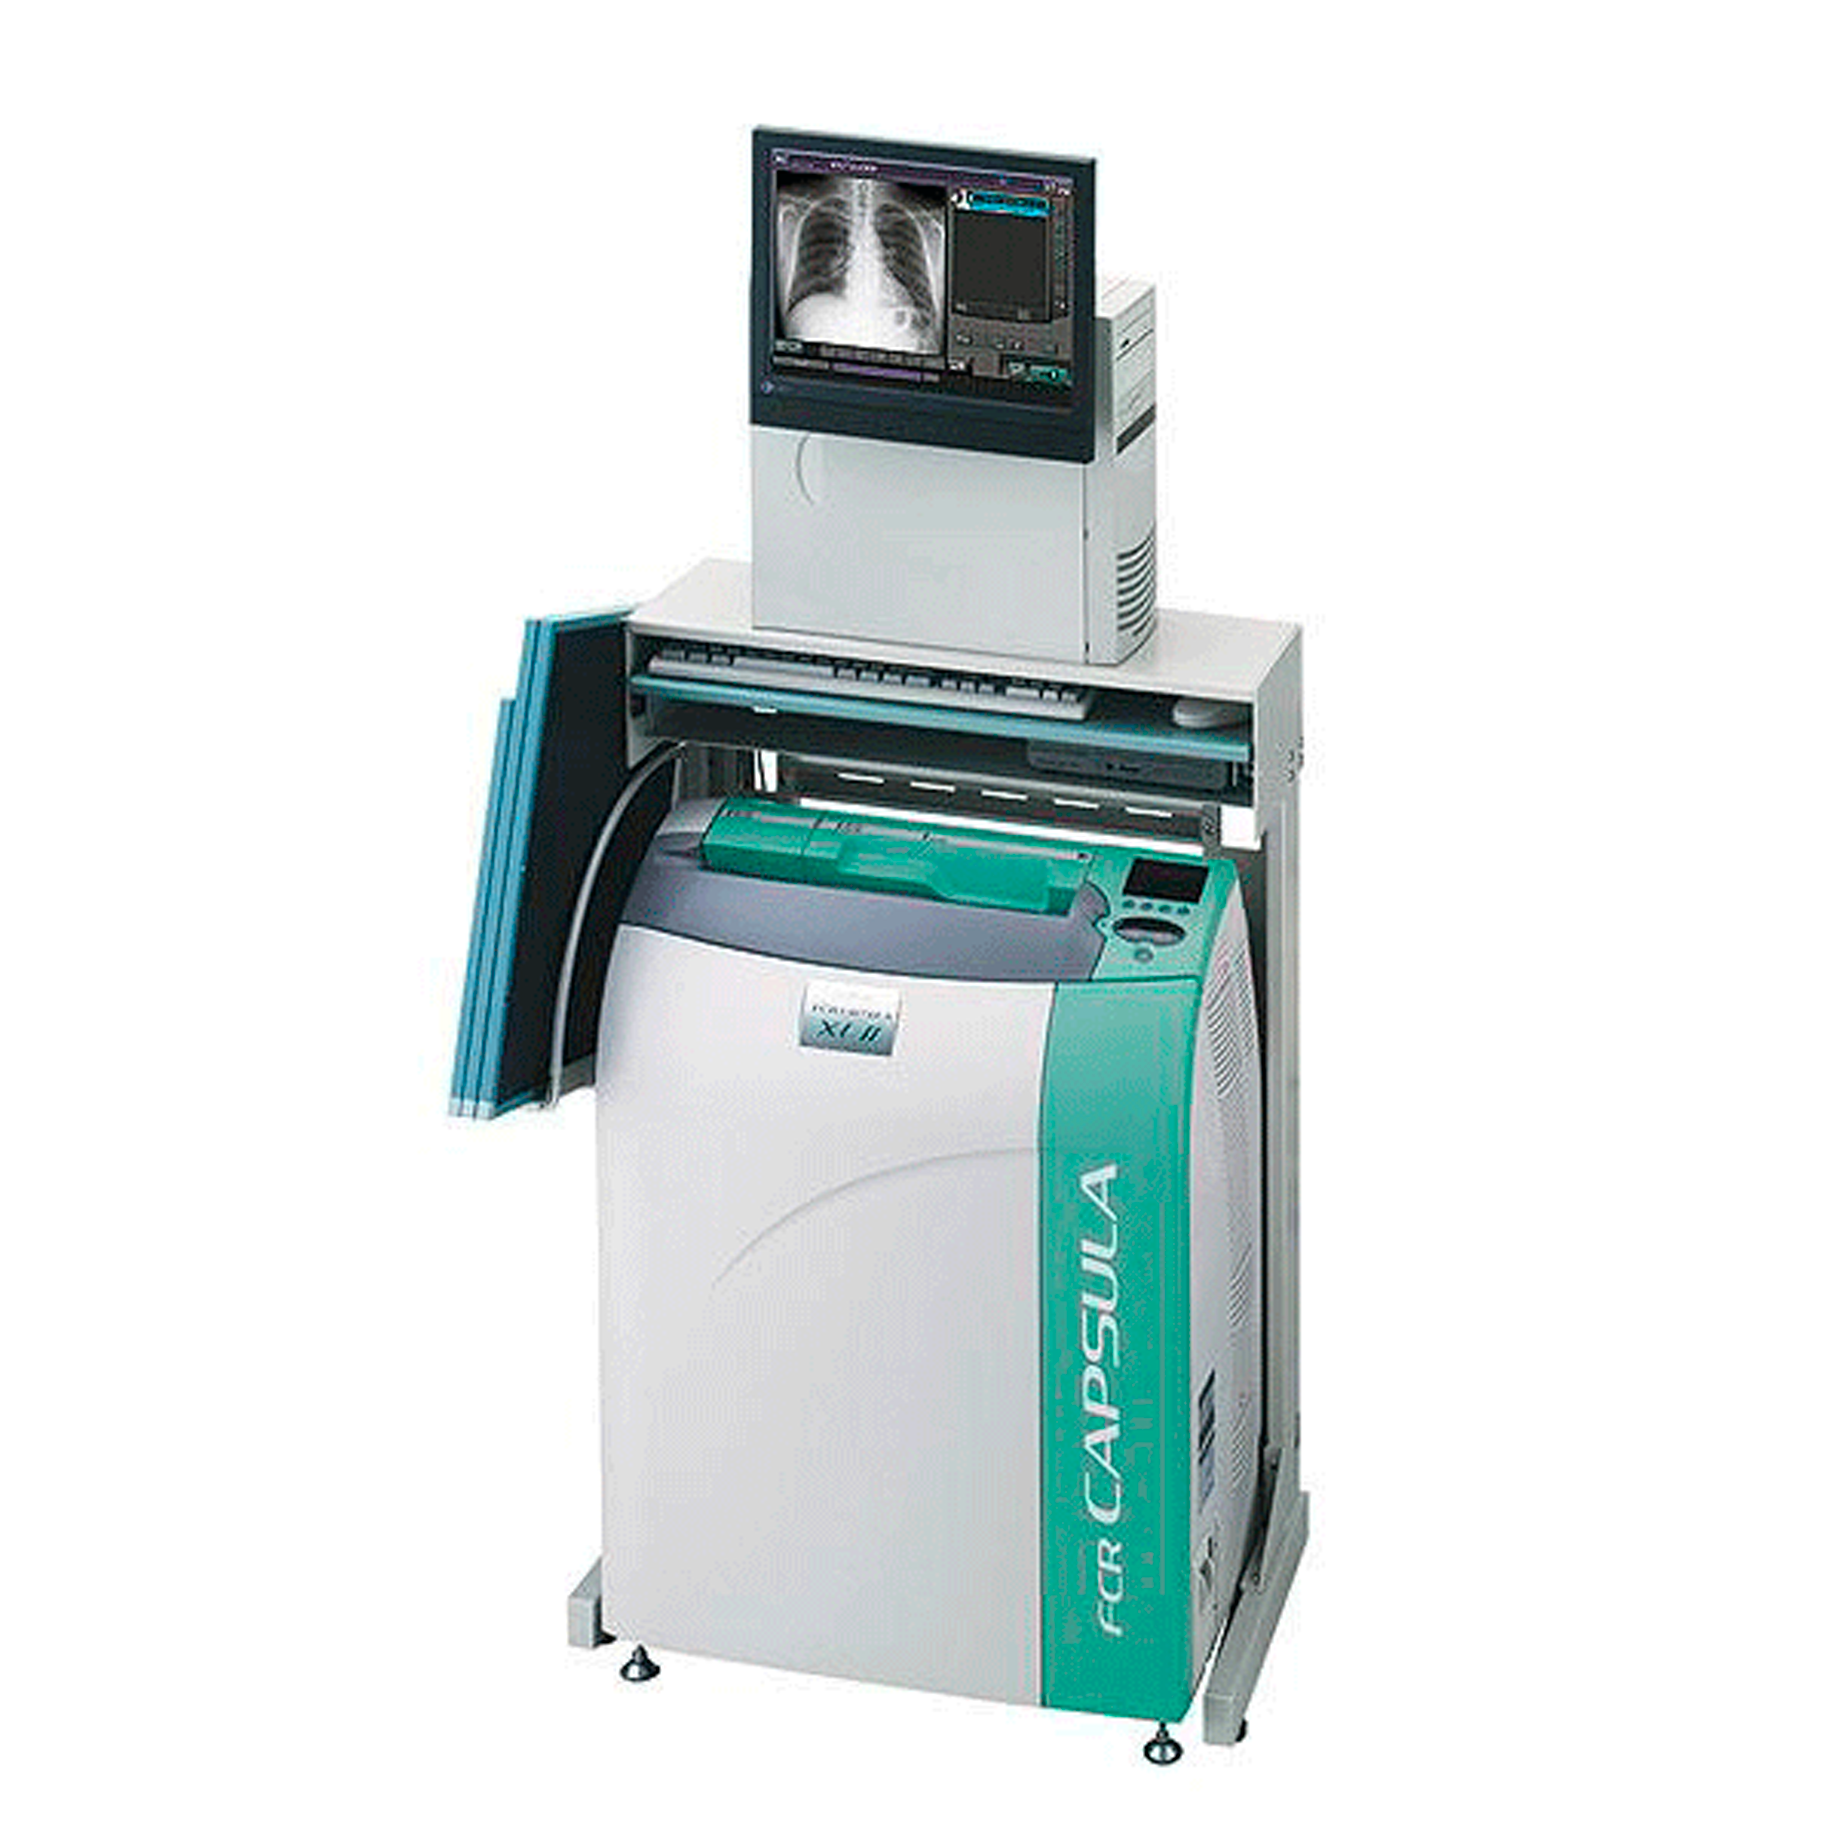 equipo digitalizador que sirve para escanear una imagen de rayos , se puede utilizar en abdomen, pecho, hueso, columna vertebral, etc...